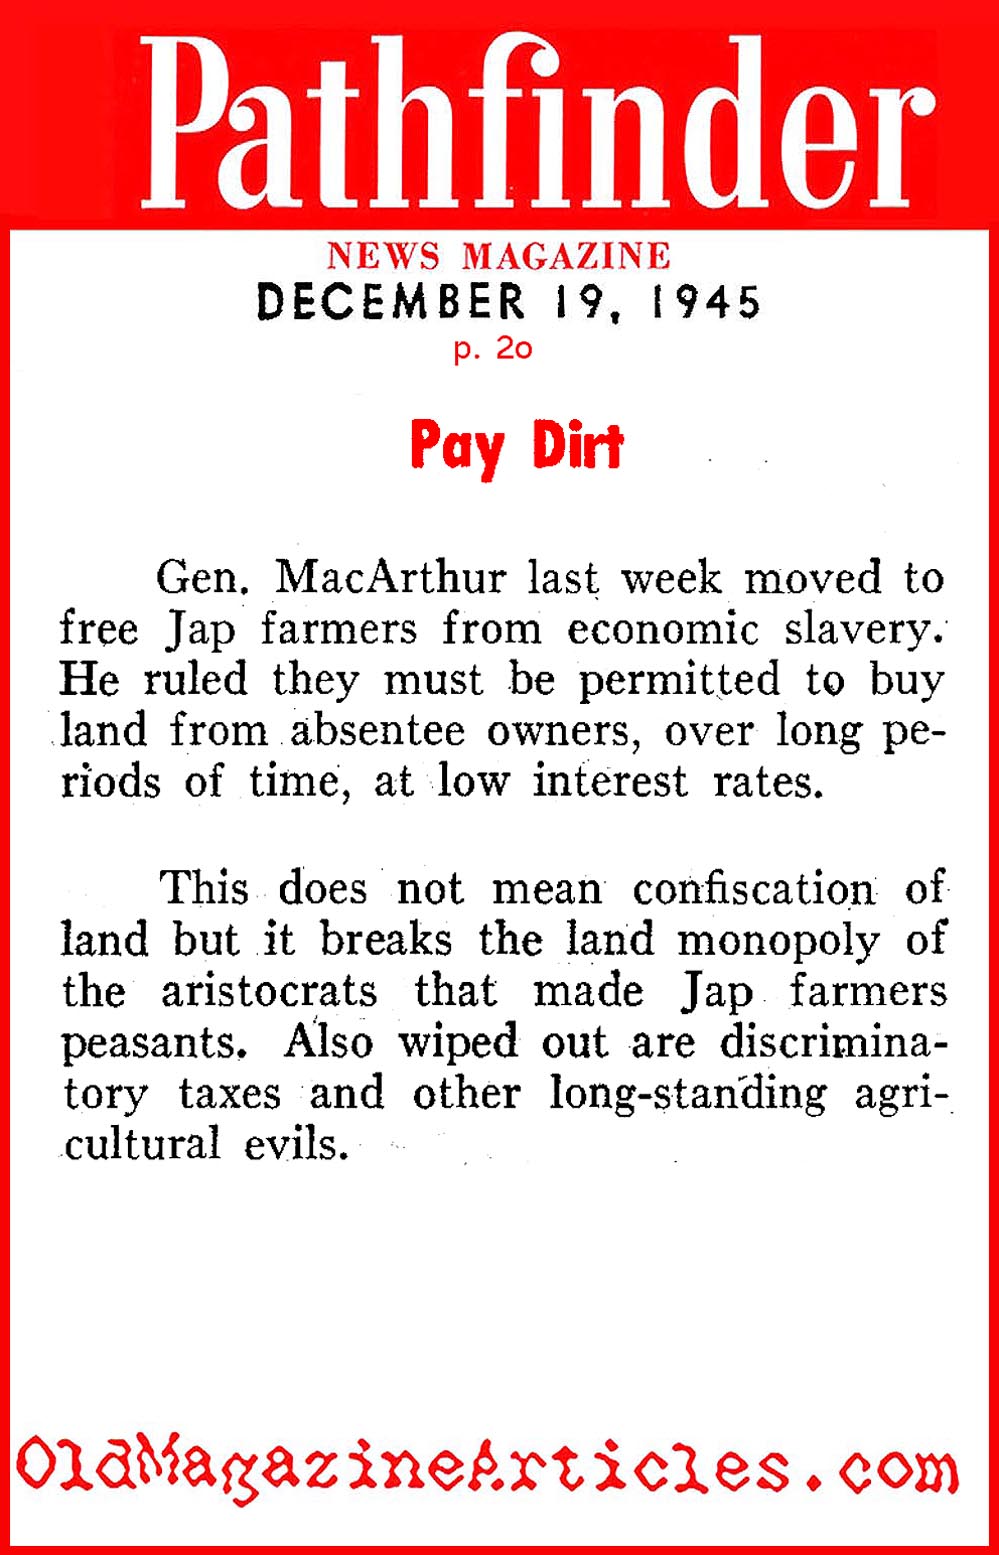 Japanese Feudalism Overturned (Pathfinder Magazine, 1945)